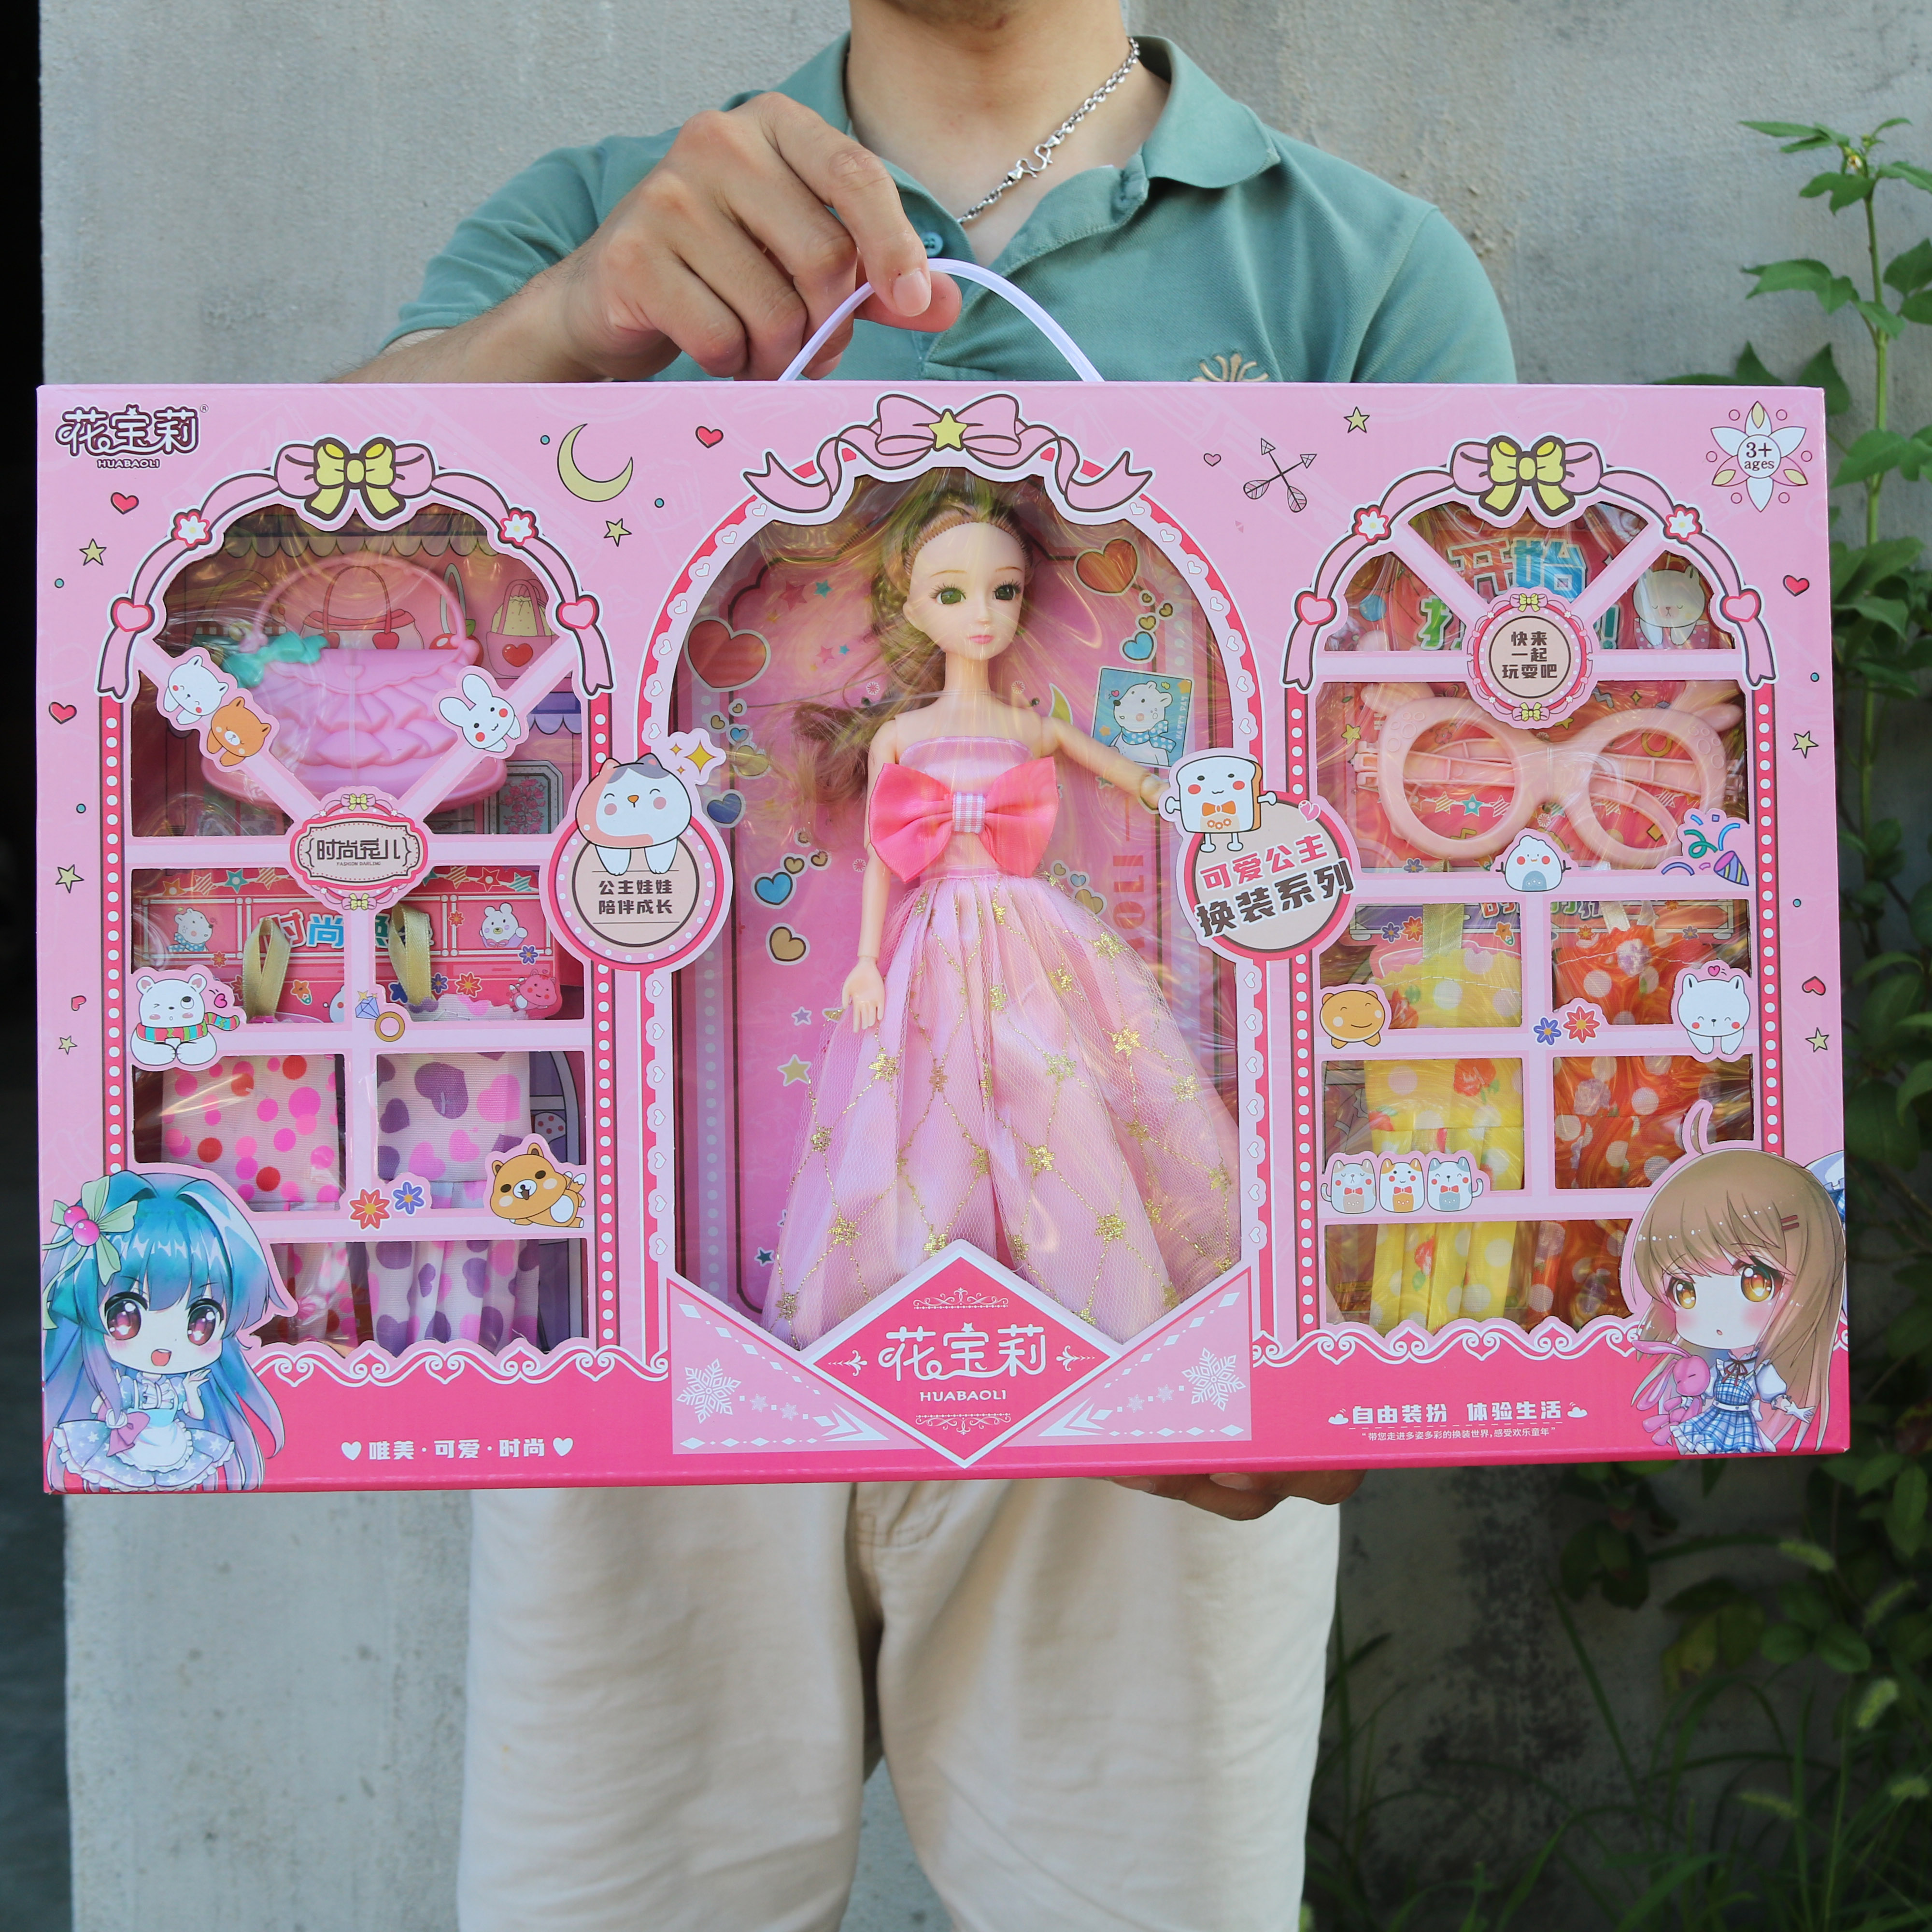 女孩洋娃娃套装超大号礼盒公主玩具换装仿真衣服过家家礼物礼品盒